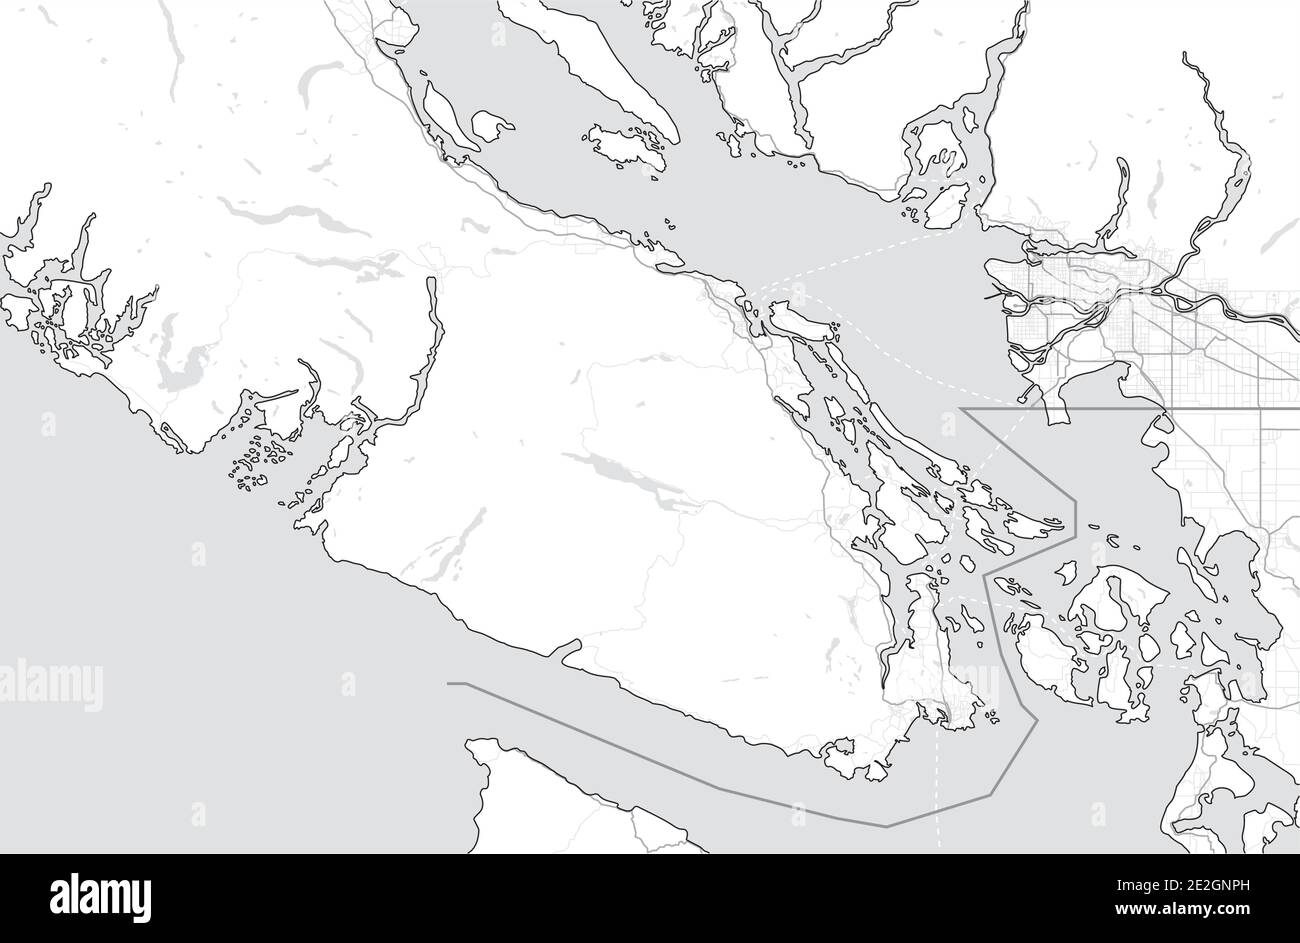 Carte de l'île de Vancouver (Nanaimo, Victoria, Tofino) et du Grand Vancouver. Canada, Colombie-Britannique. Carte touristique. Carte d'échelle de gris simple sans texte Illustration de Vecteur